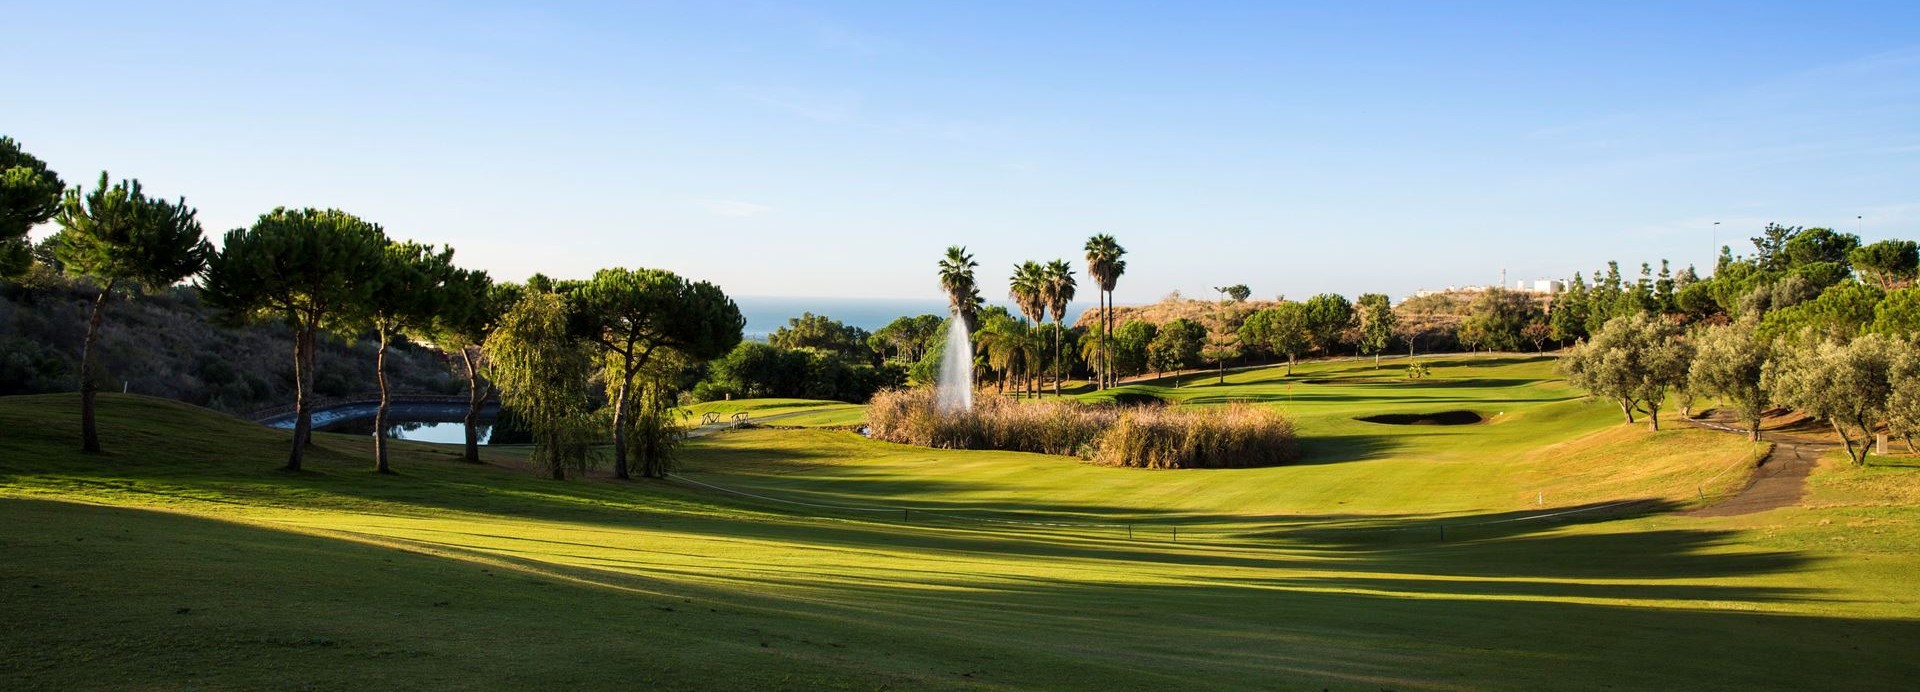 Añoreta Golf  | Golfové zájezdy, golfová dovolená, luxusní golf